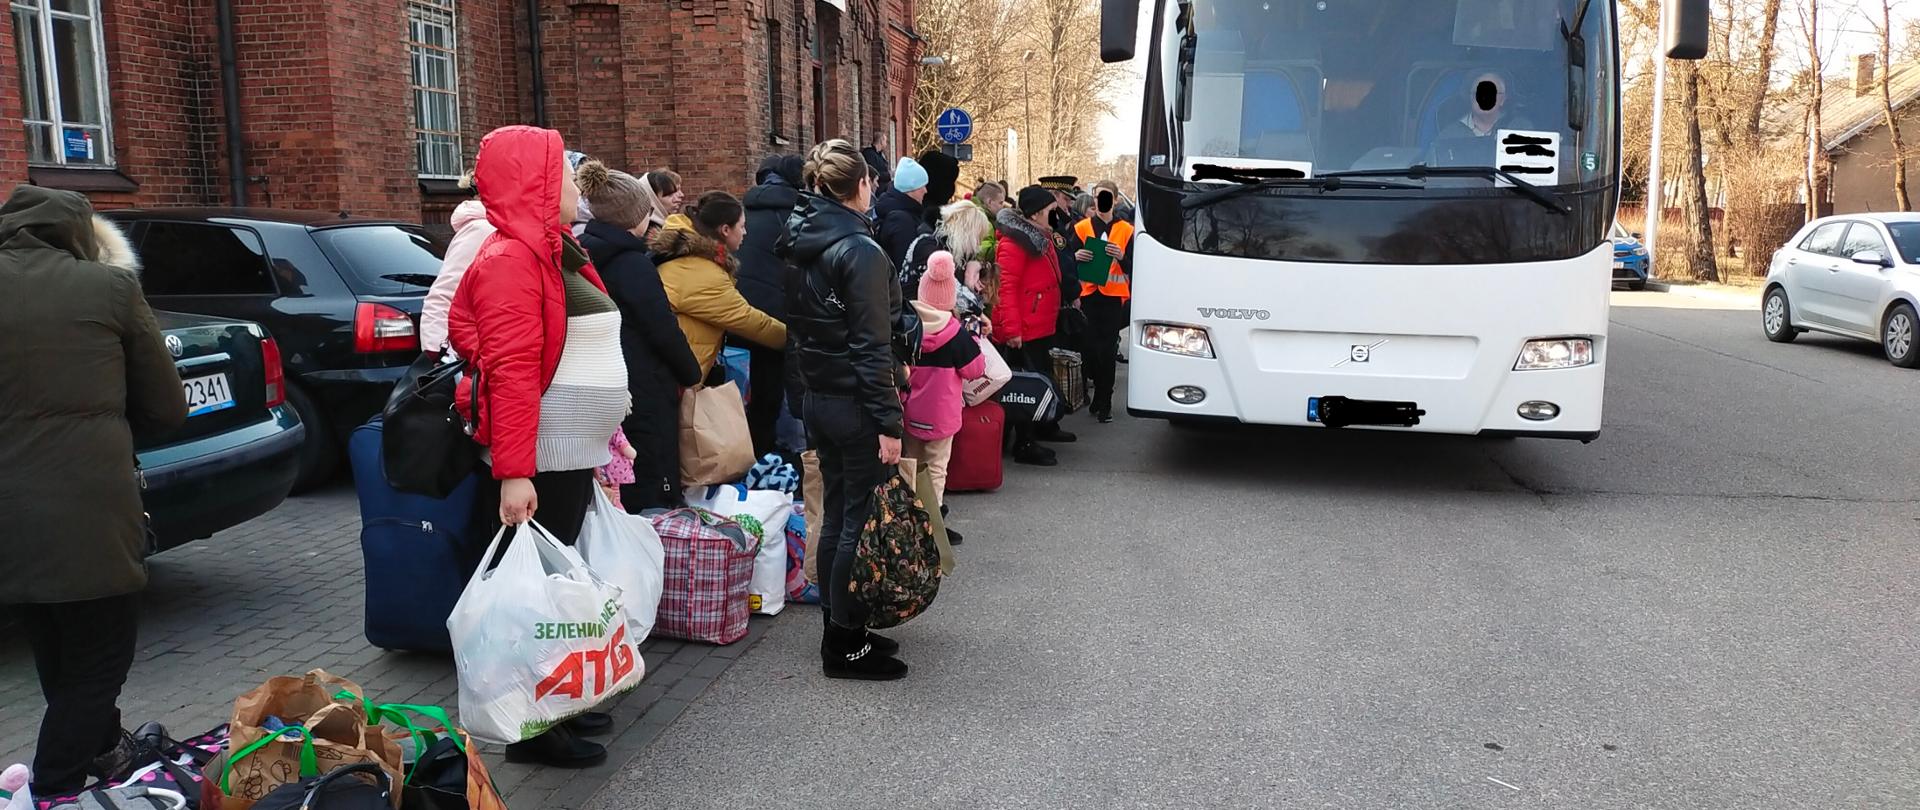 Autobus podstawia się do zabrania uchodźców w dalszą drogę przed dworce PKP.